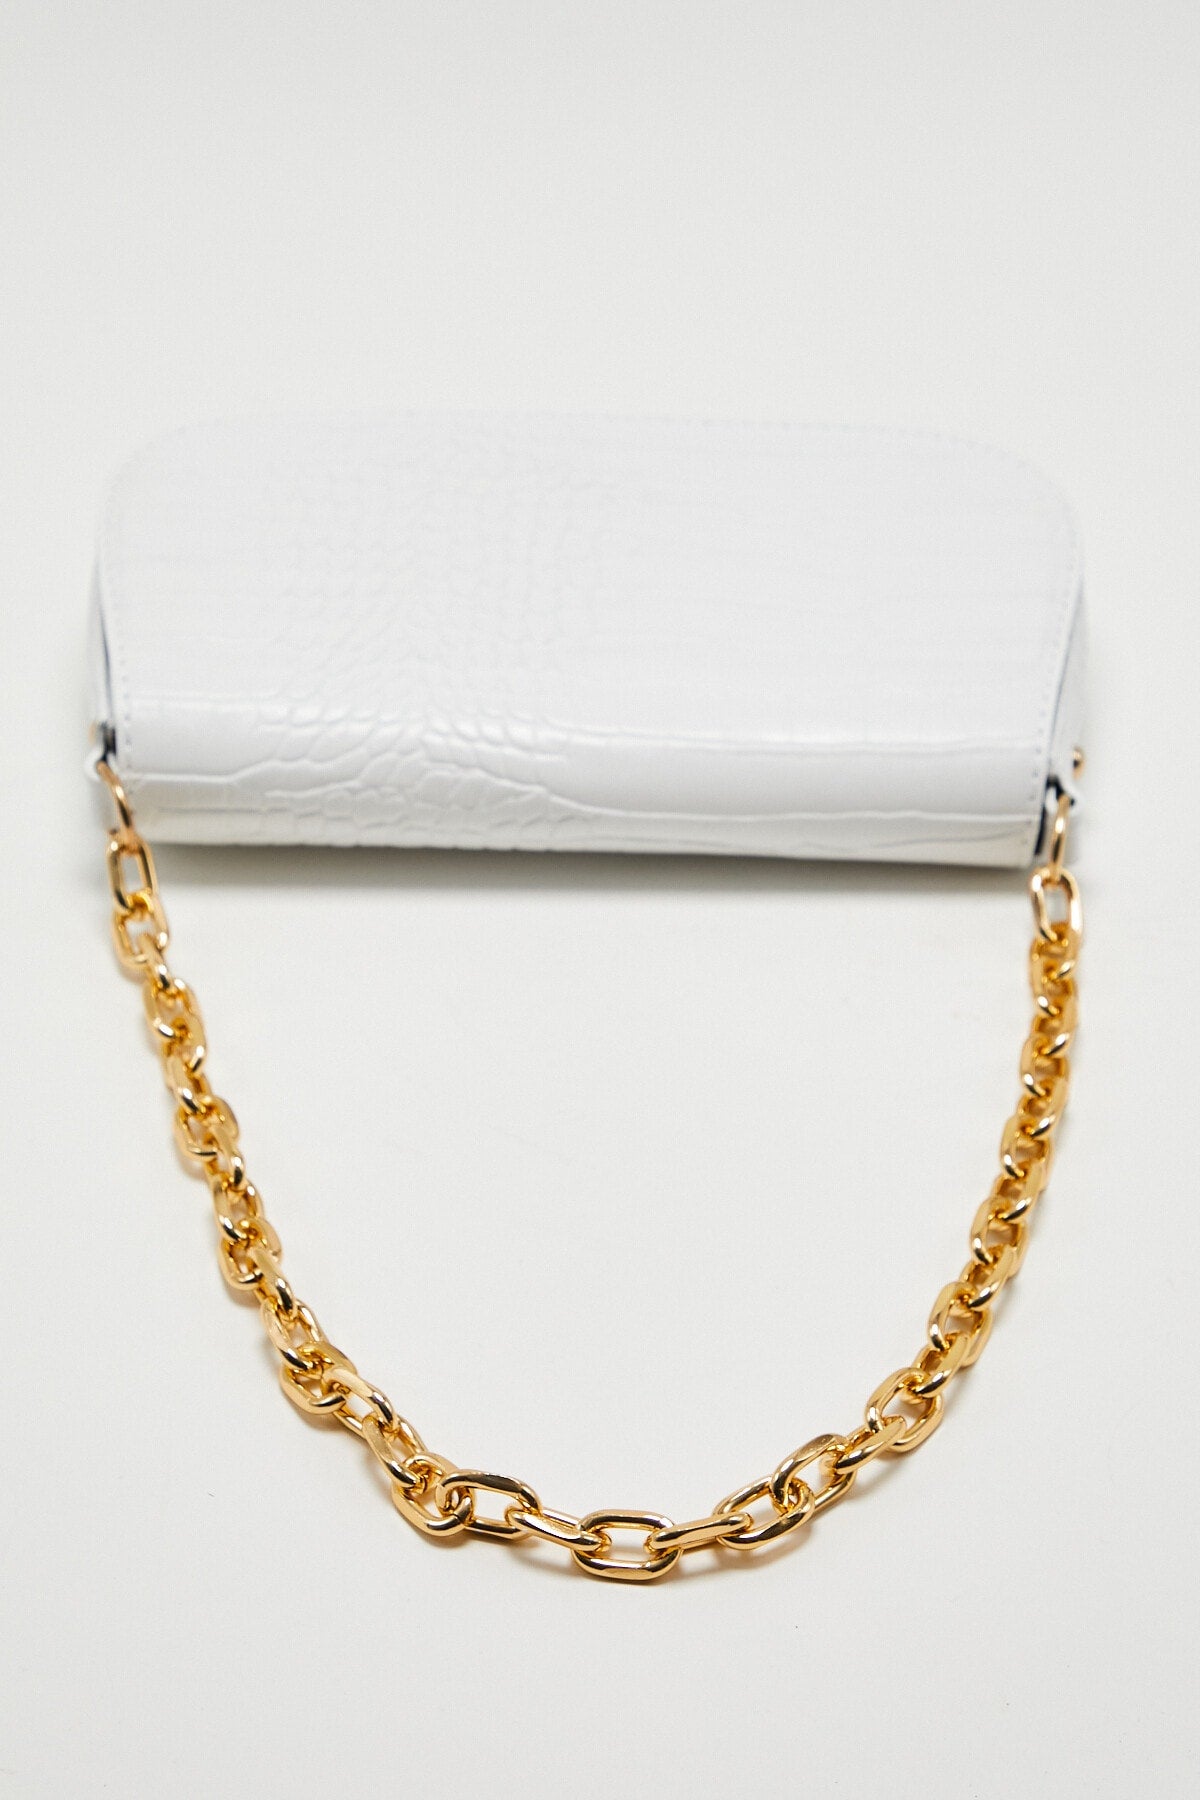 Croc Pattern Chain Baguette Bag